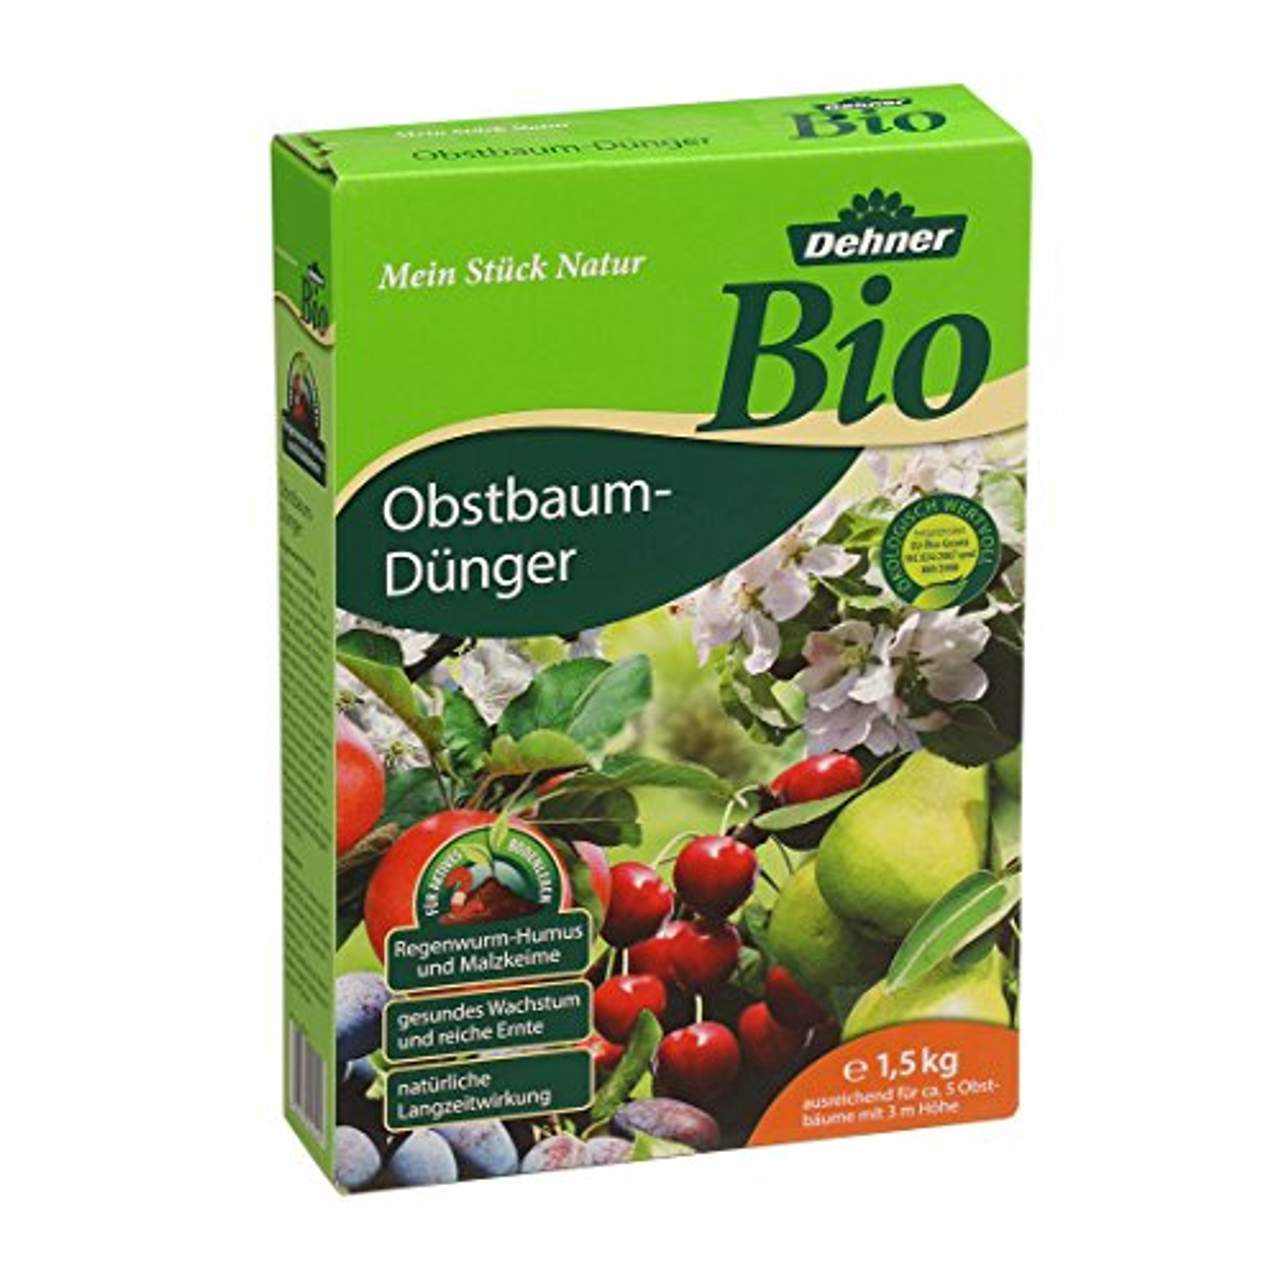 Dehner Bio Obstbaum-Dünger 1.5 kg